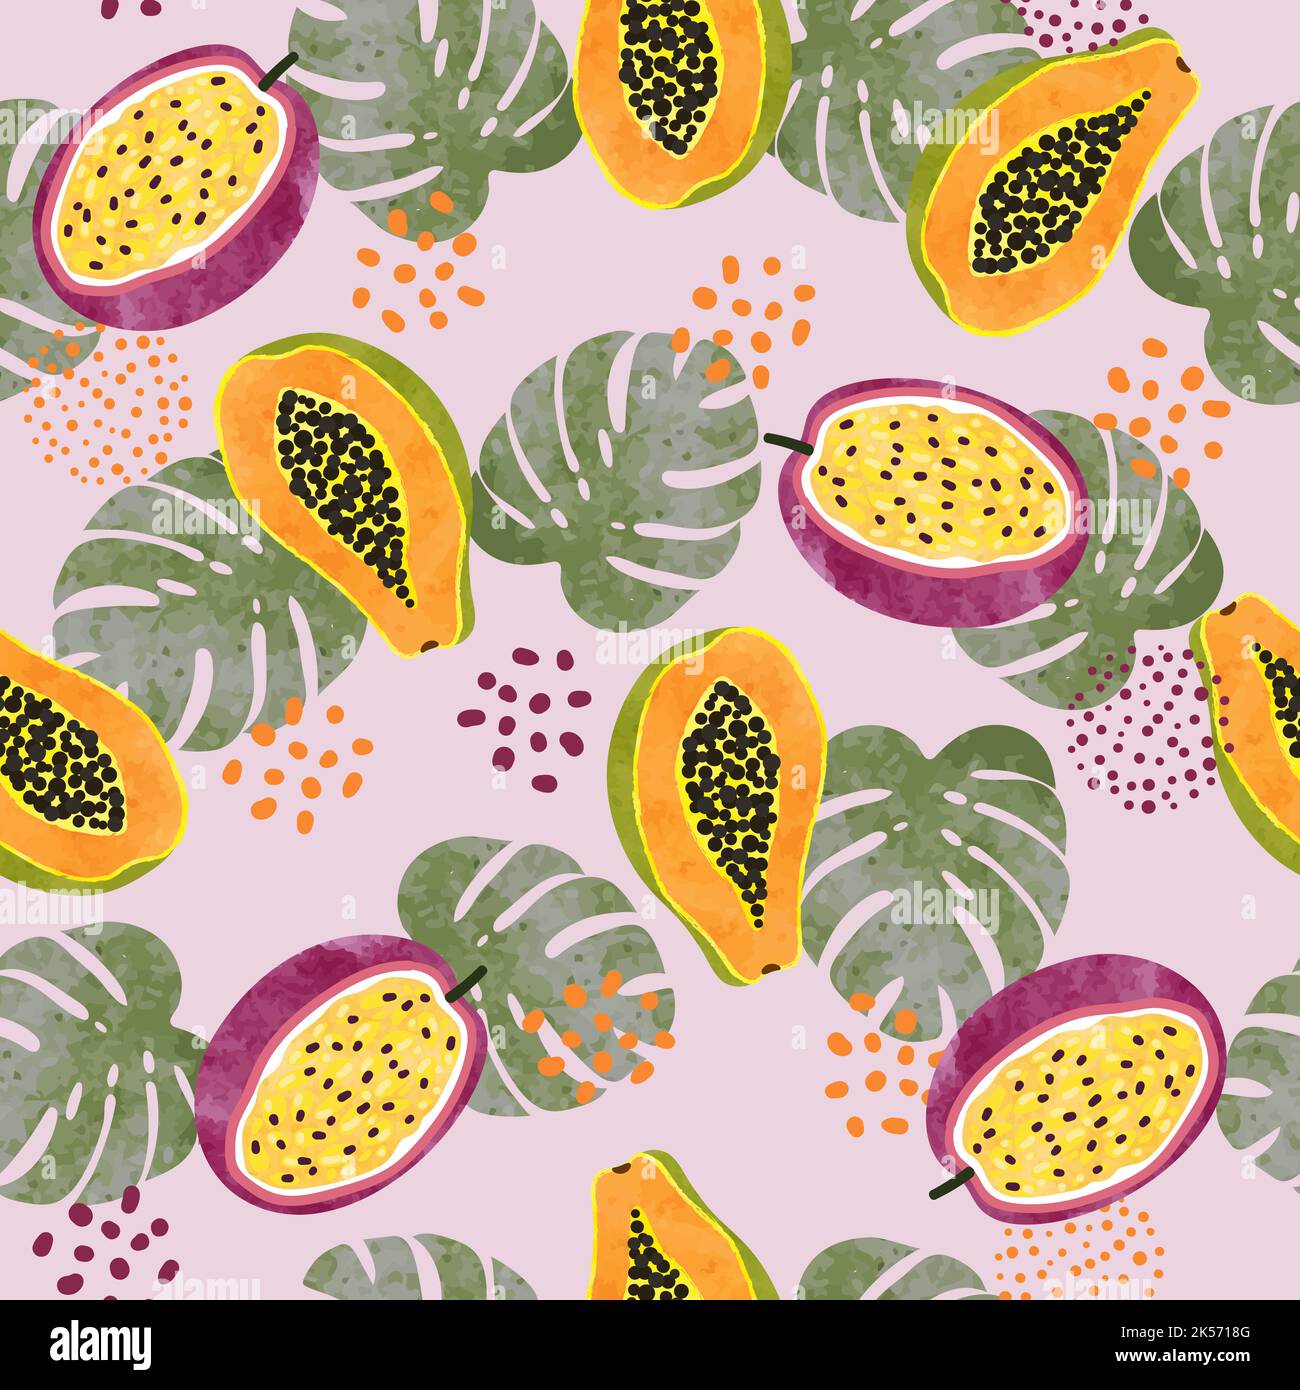 Motif de fruits tropicaux avec papaye aquarelle, fruits de la passion et feuilles de palmier. Illustration de Vecteur